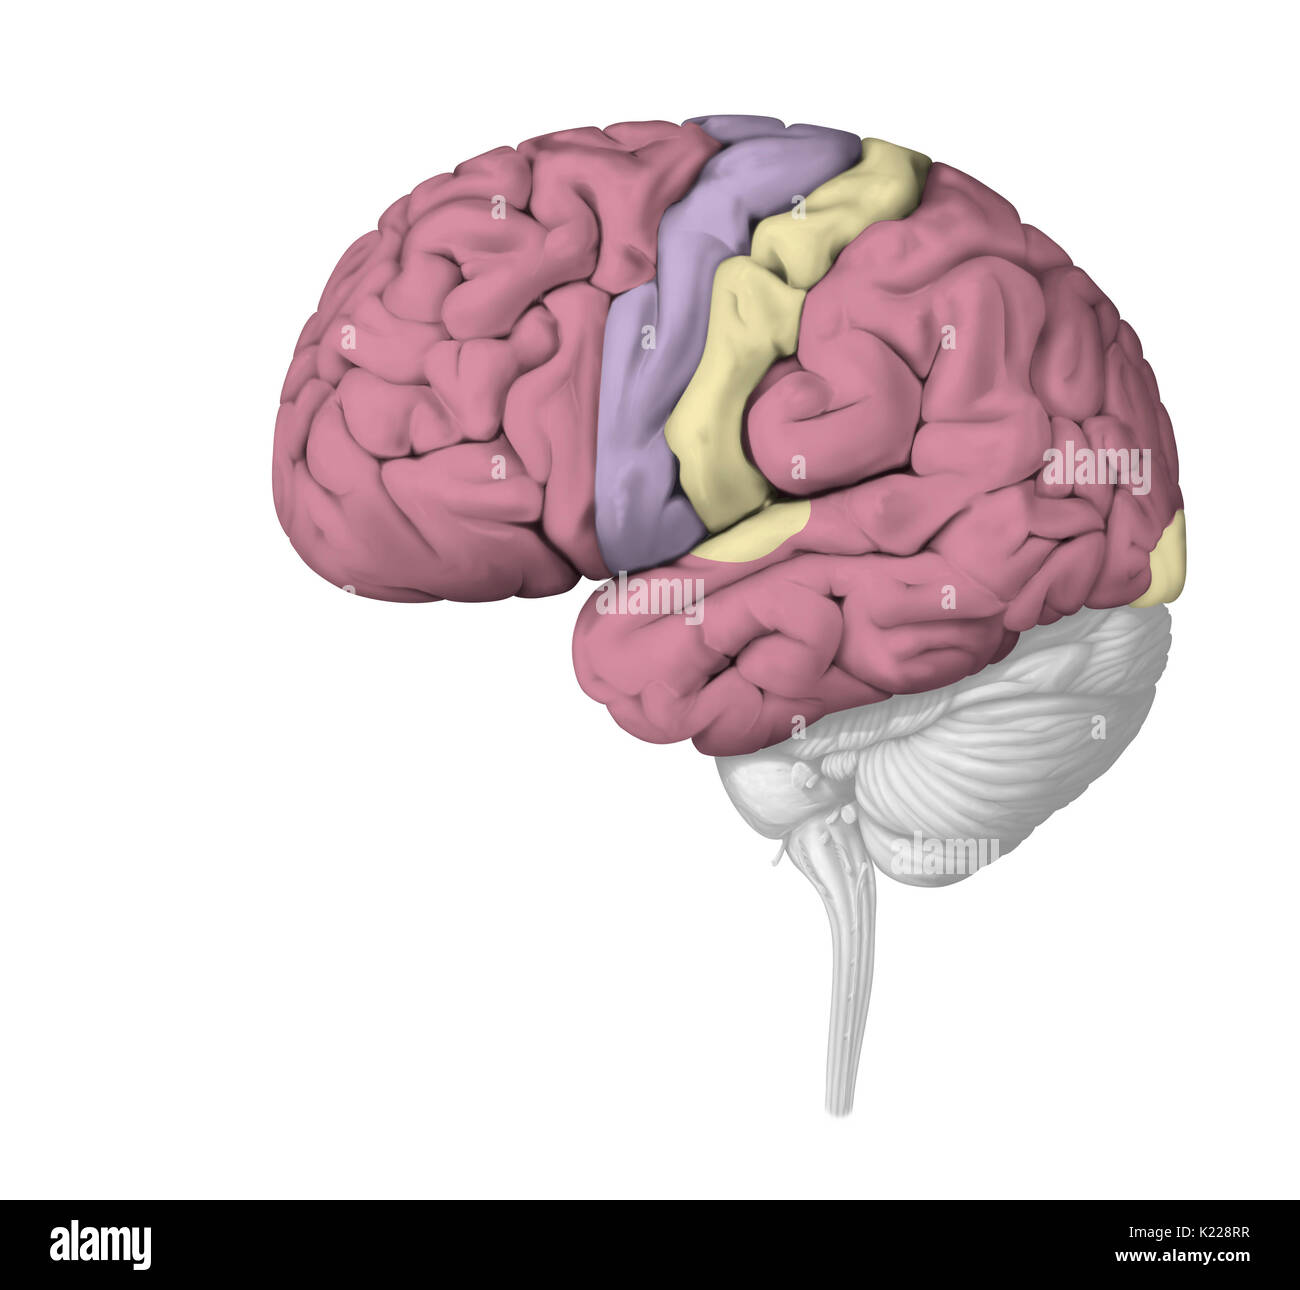 La corteccia cerebrale completa delle più sofisticate funzioni nervose: elaborazione delle informazioni, la percezione sensoriale, movimento volontario e le funzioni cognitive come la lingua e la memorizzazione. È la posizione di coscienza. Foto Stock